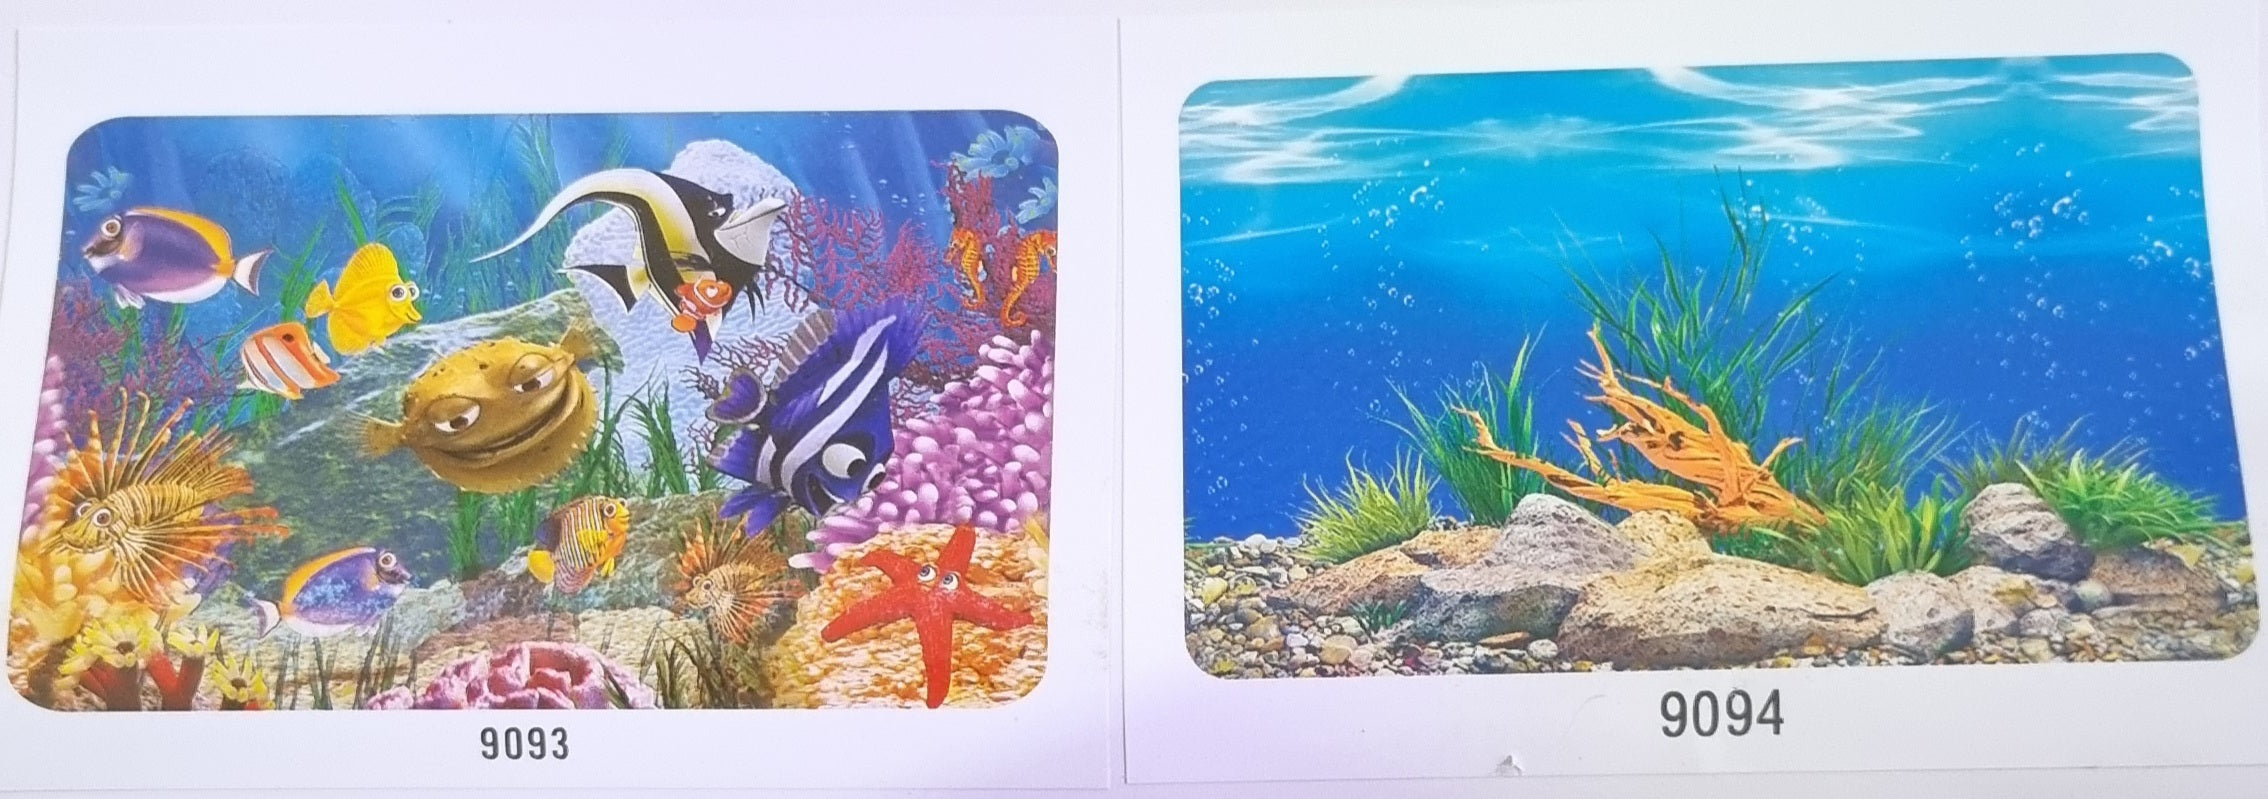 Aquarium Backgrounds 30cm